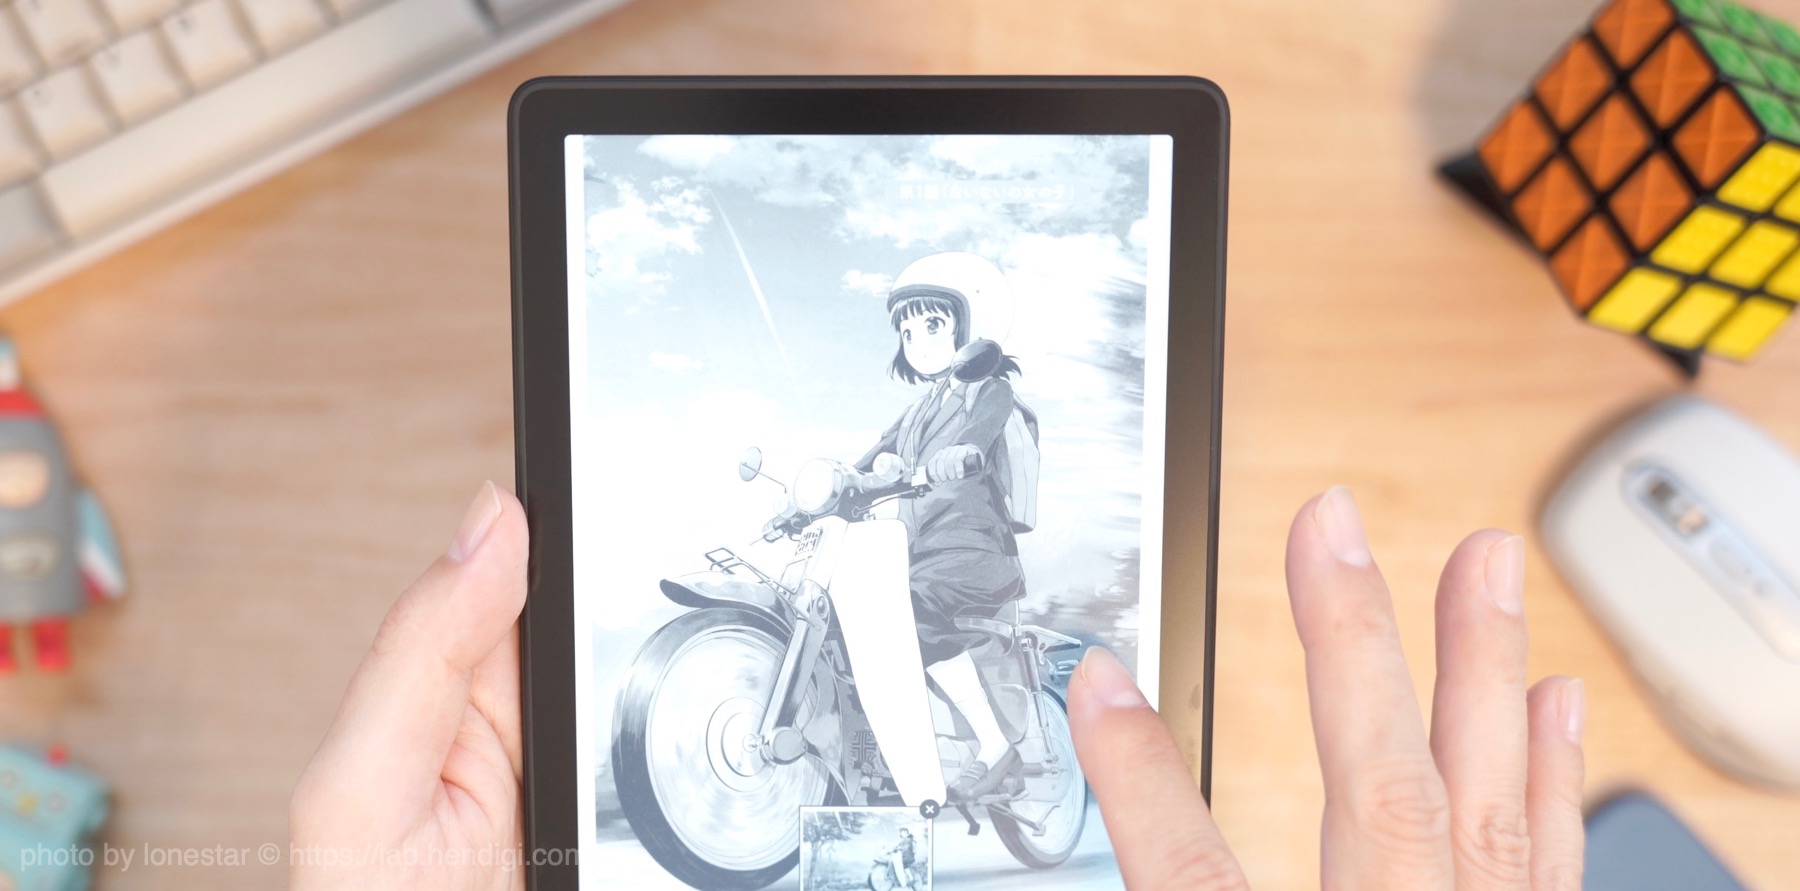 新型Kindle Paperwhite11世代　レビュー